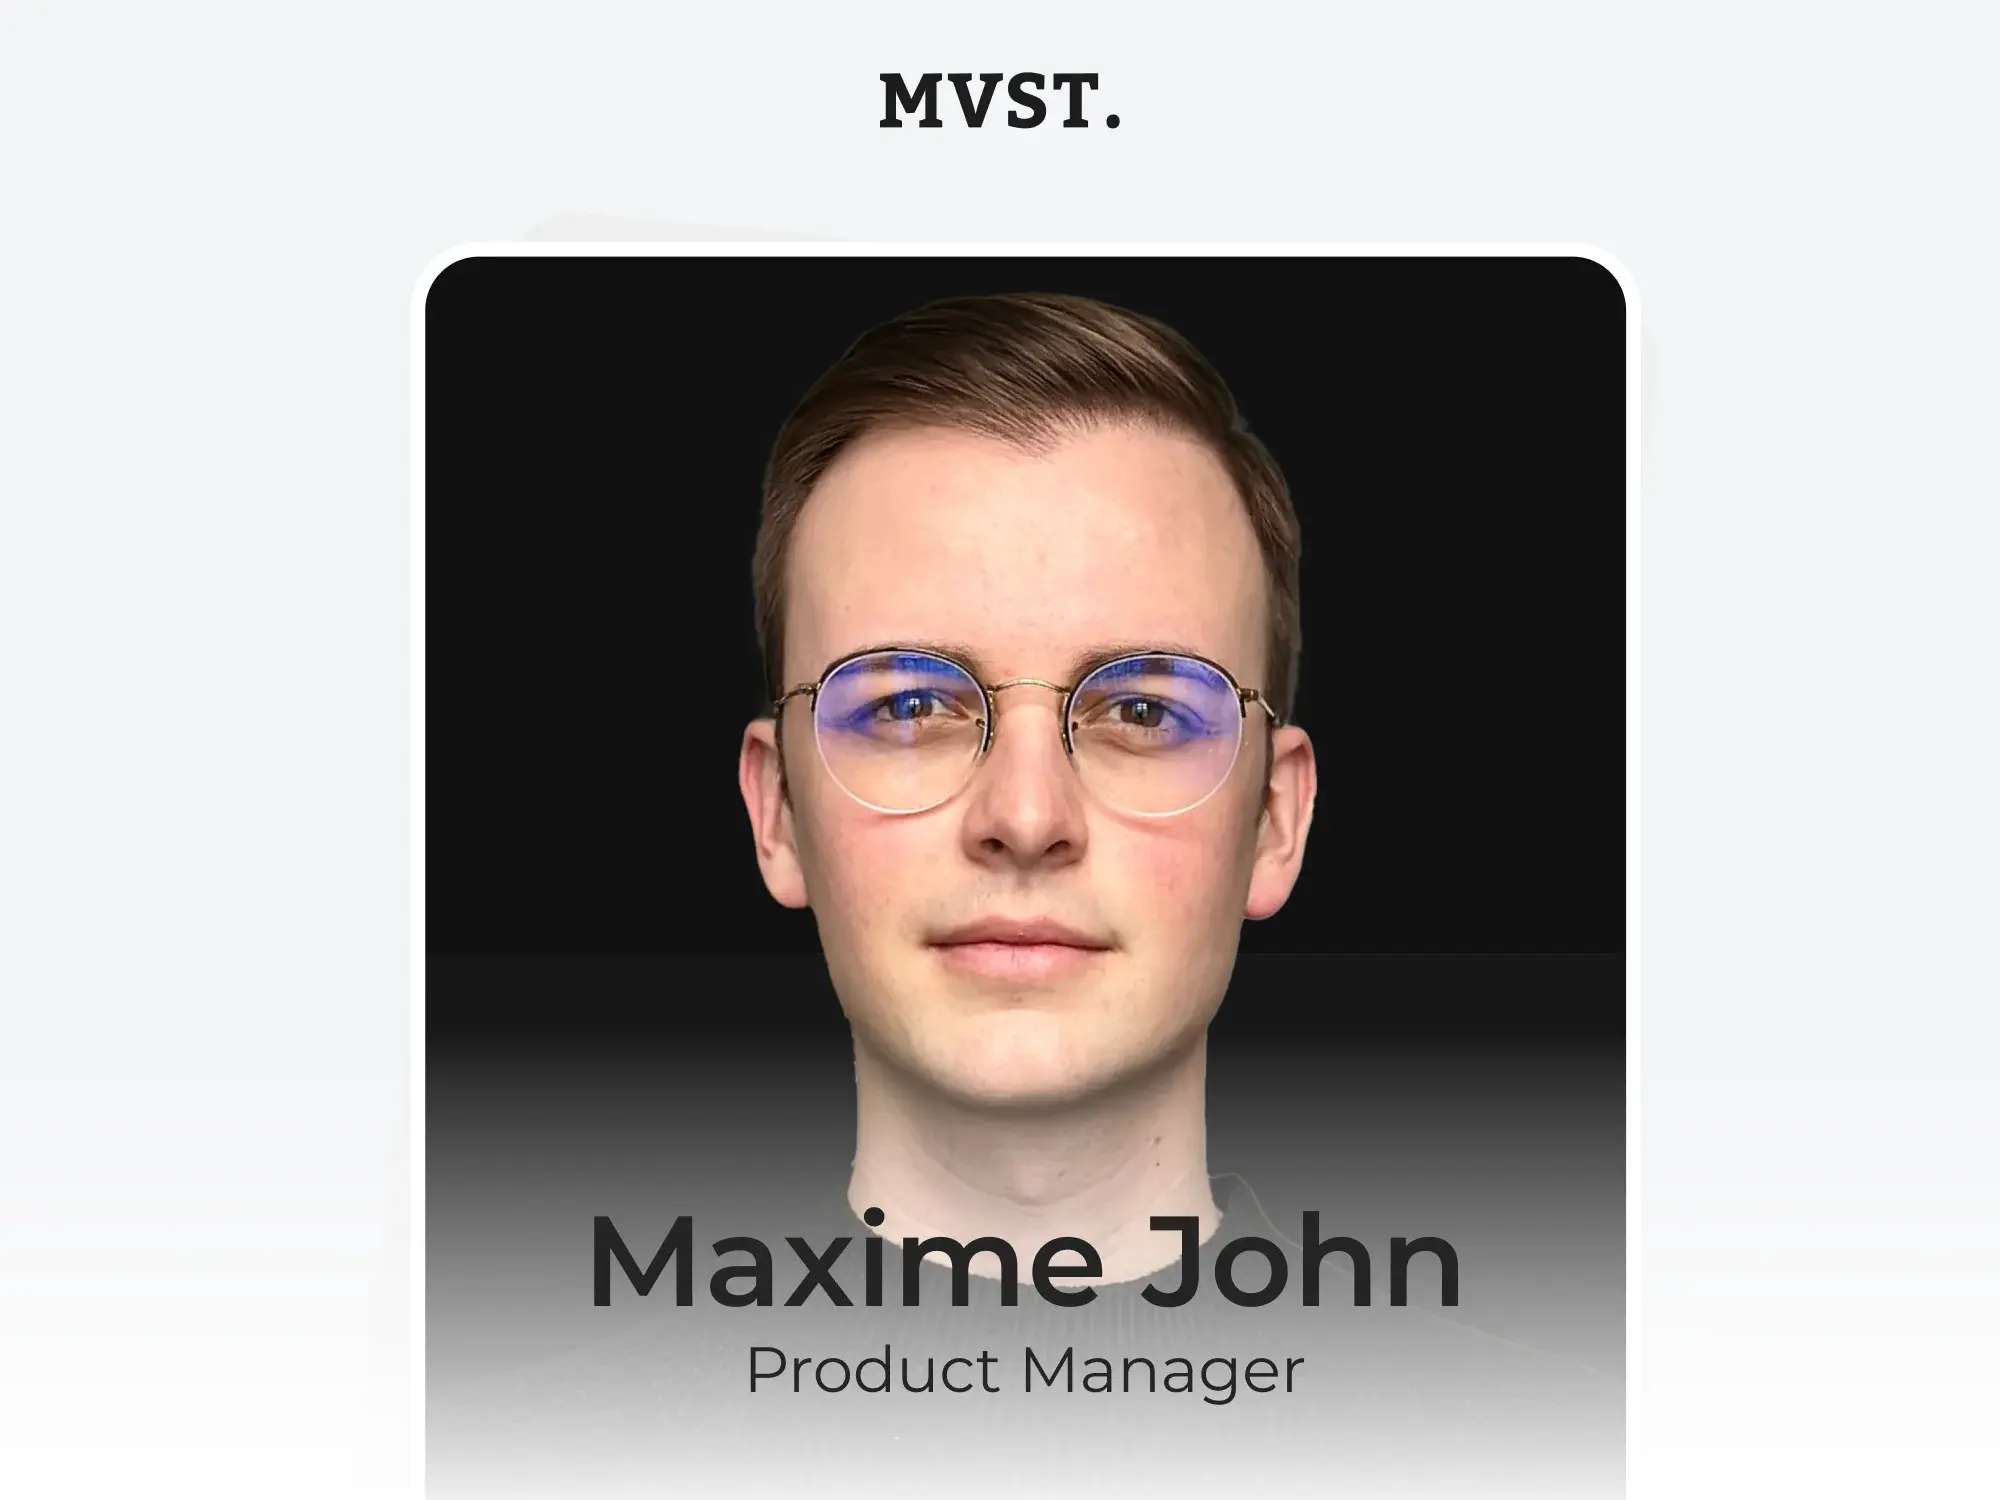 Willkommen bei MVST, Maxime!